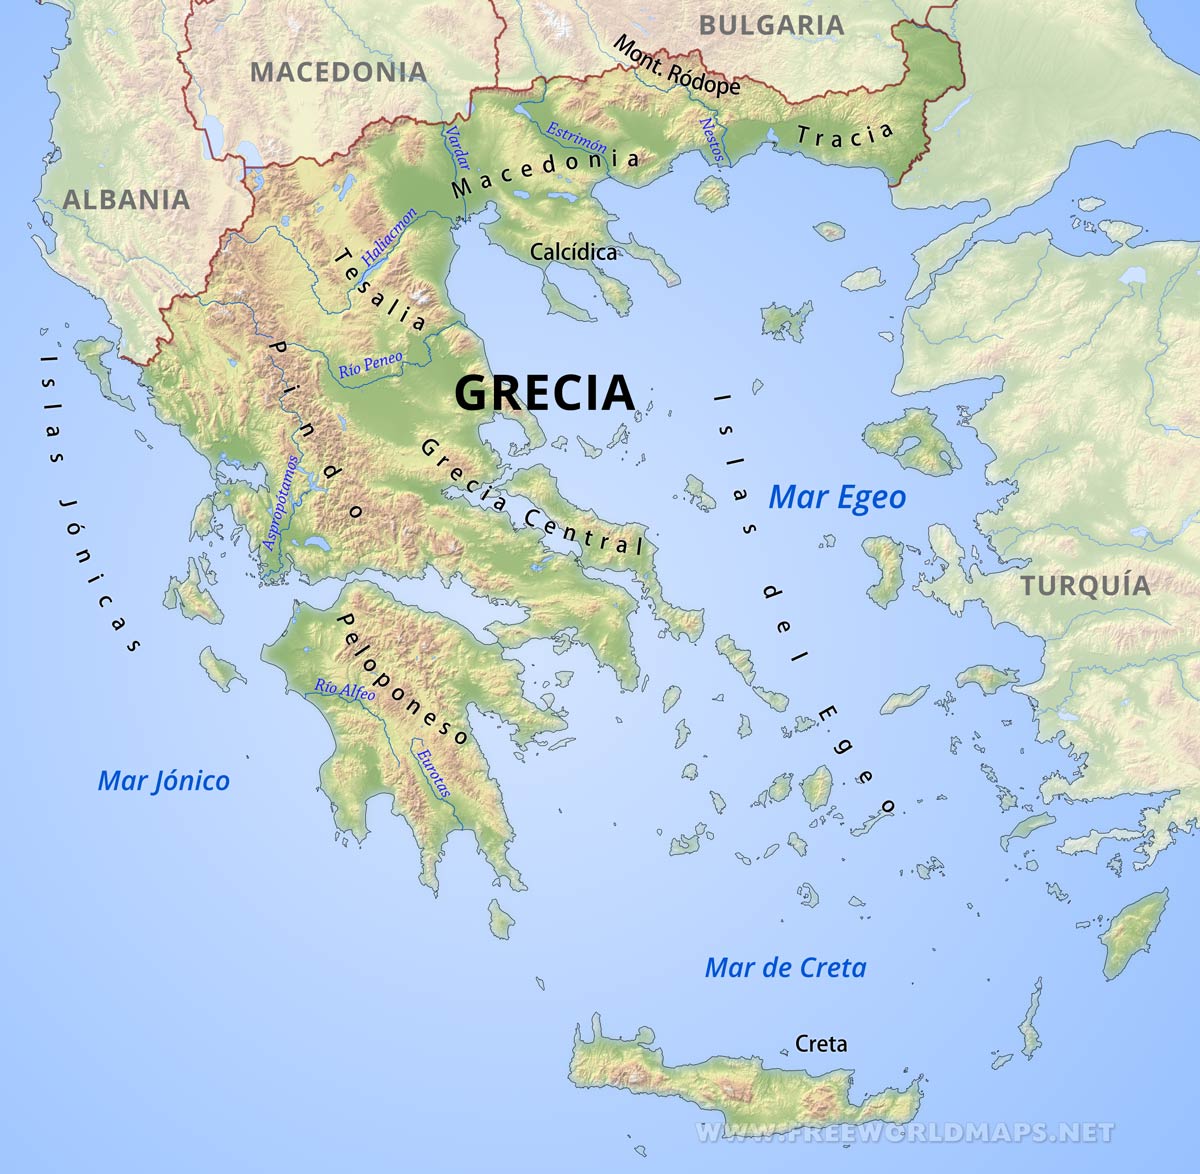 Territorio: Sociales: Actividad: El mundo griego antiguo